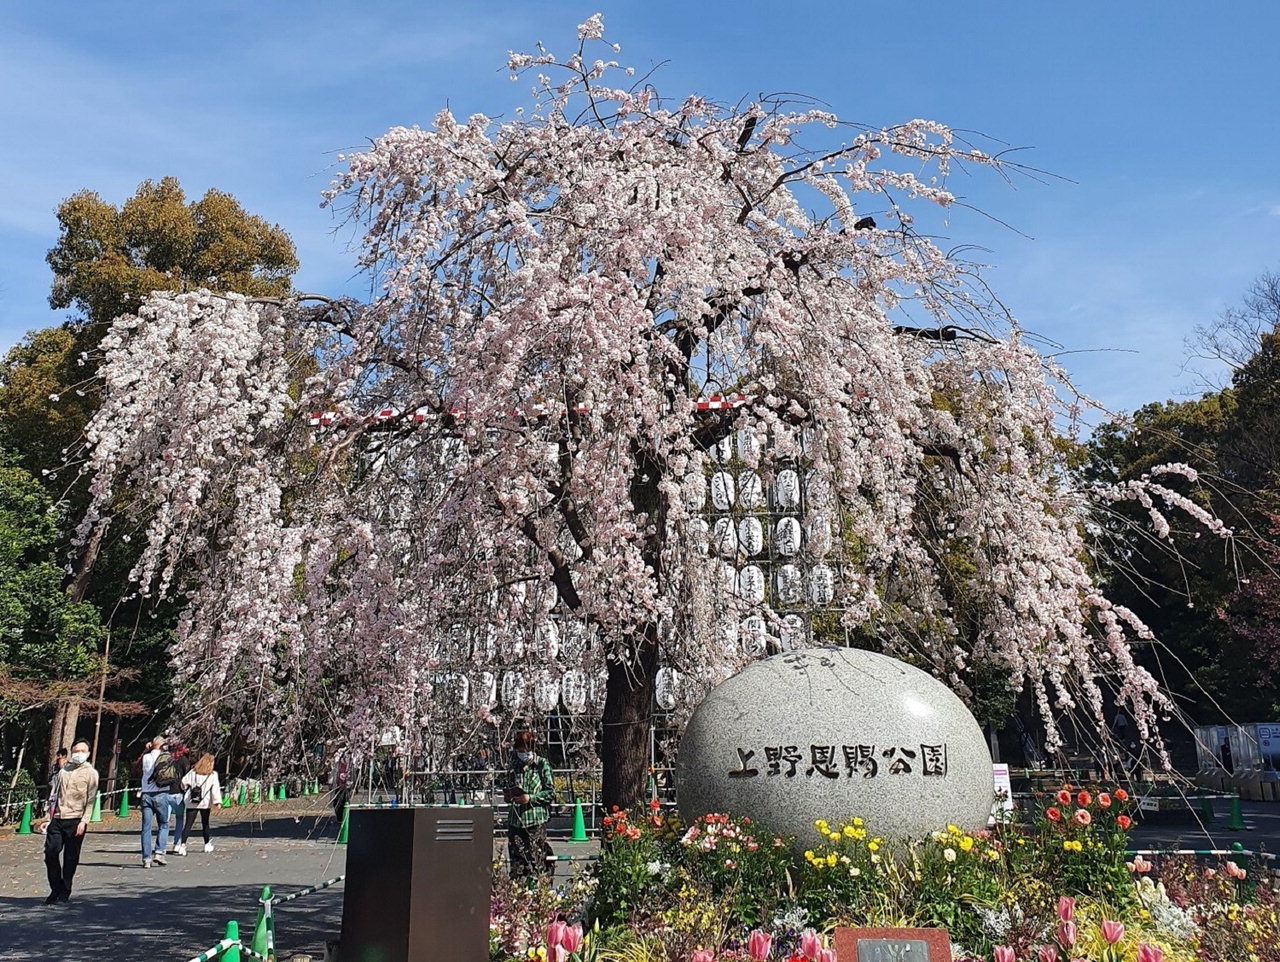 목원대 학생들이 보내온 일본 도쿄도(東京都)의 벚꽃 명소인 우에노(上野)공원의 벚꽃 풍경. /목원대